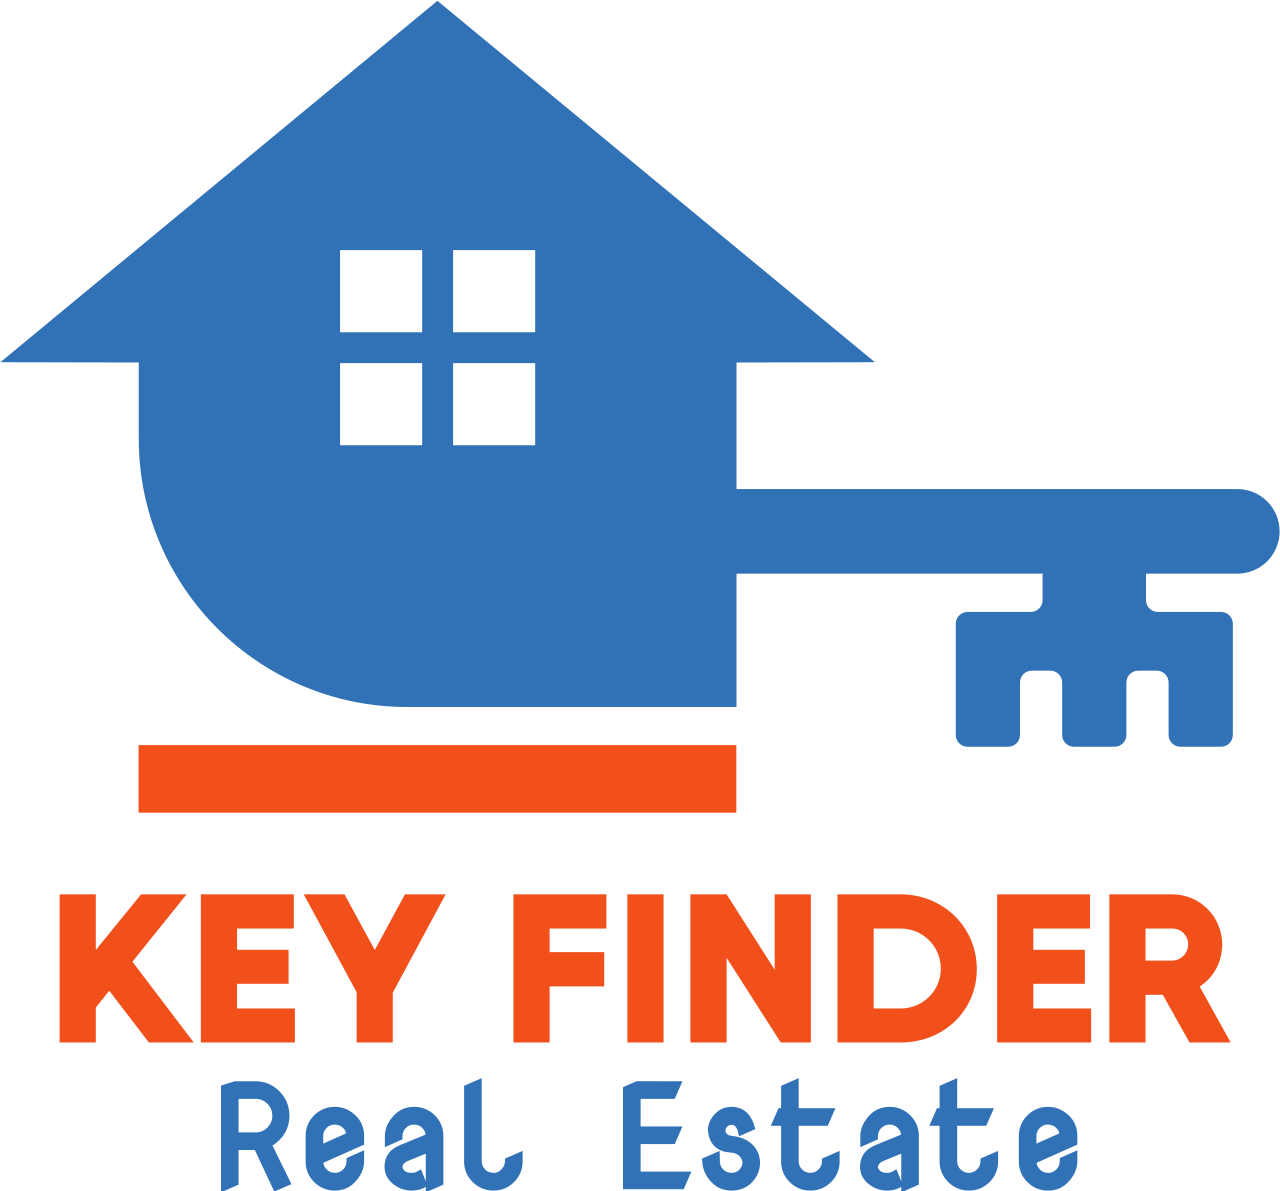 Key Finder's logo